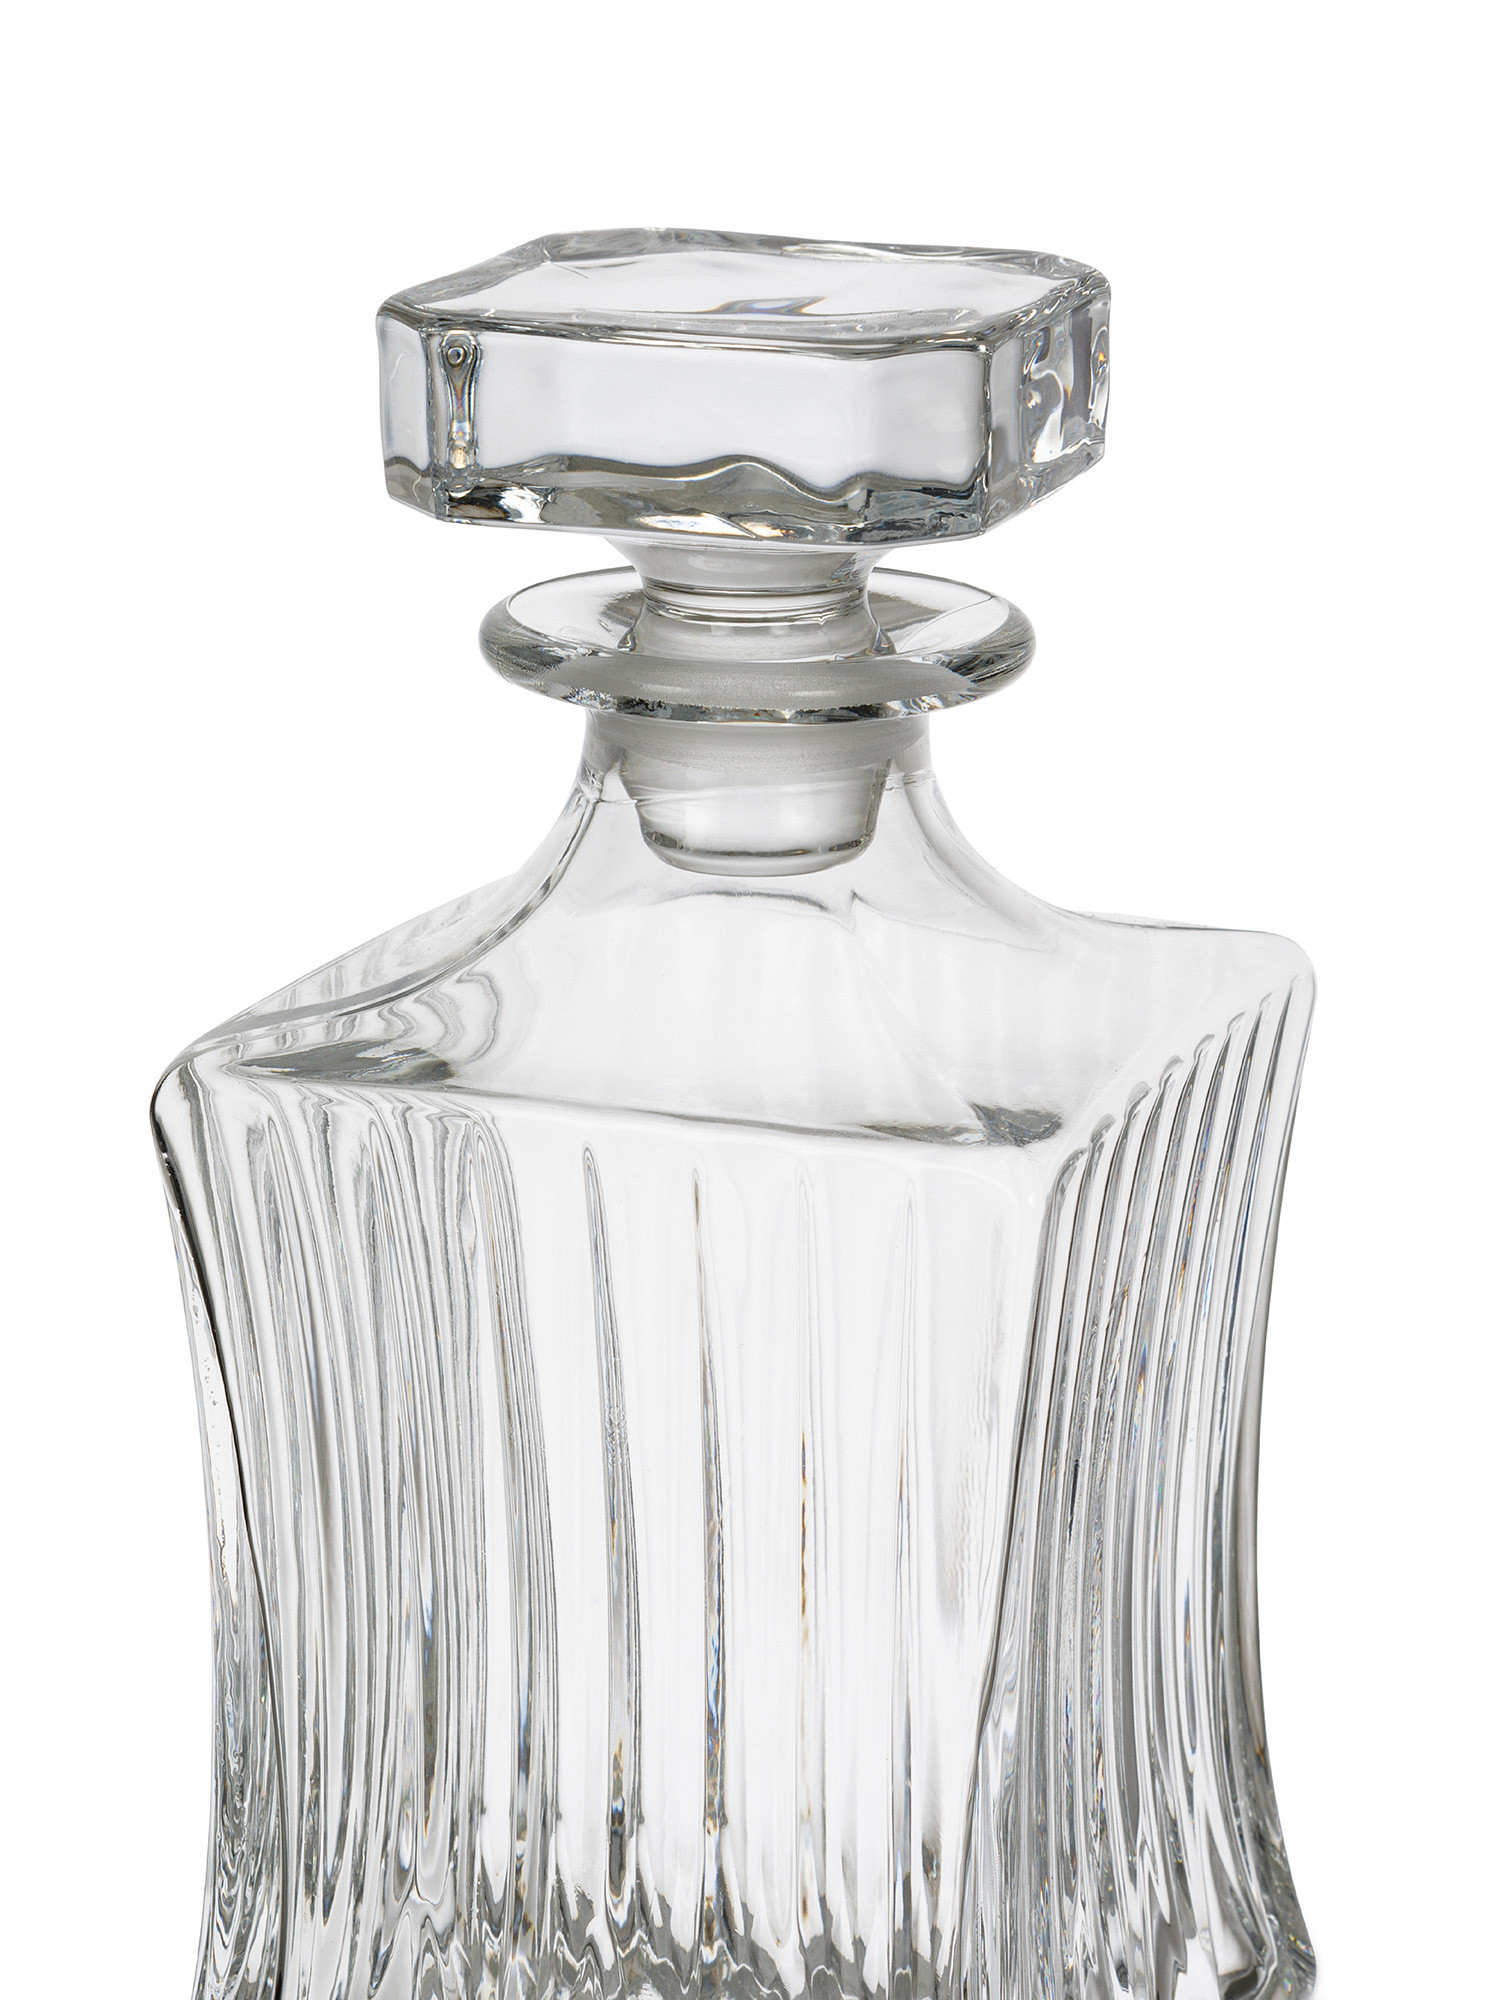 Crystal whiskey bottle, Transparent, large image number 1